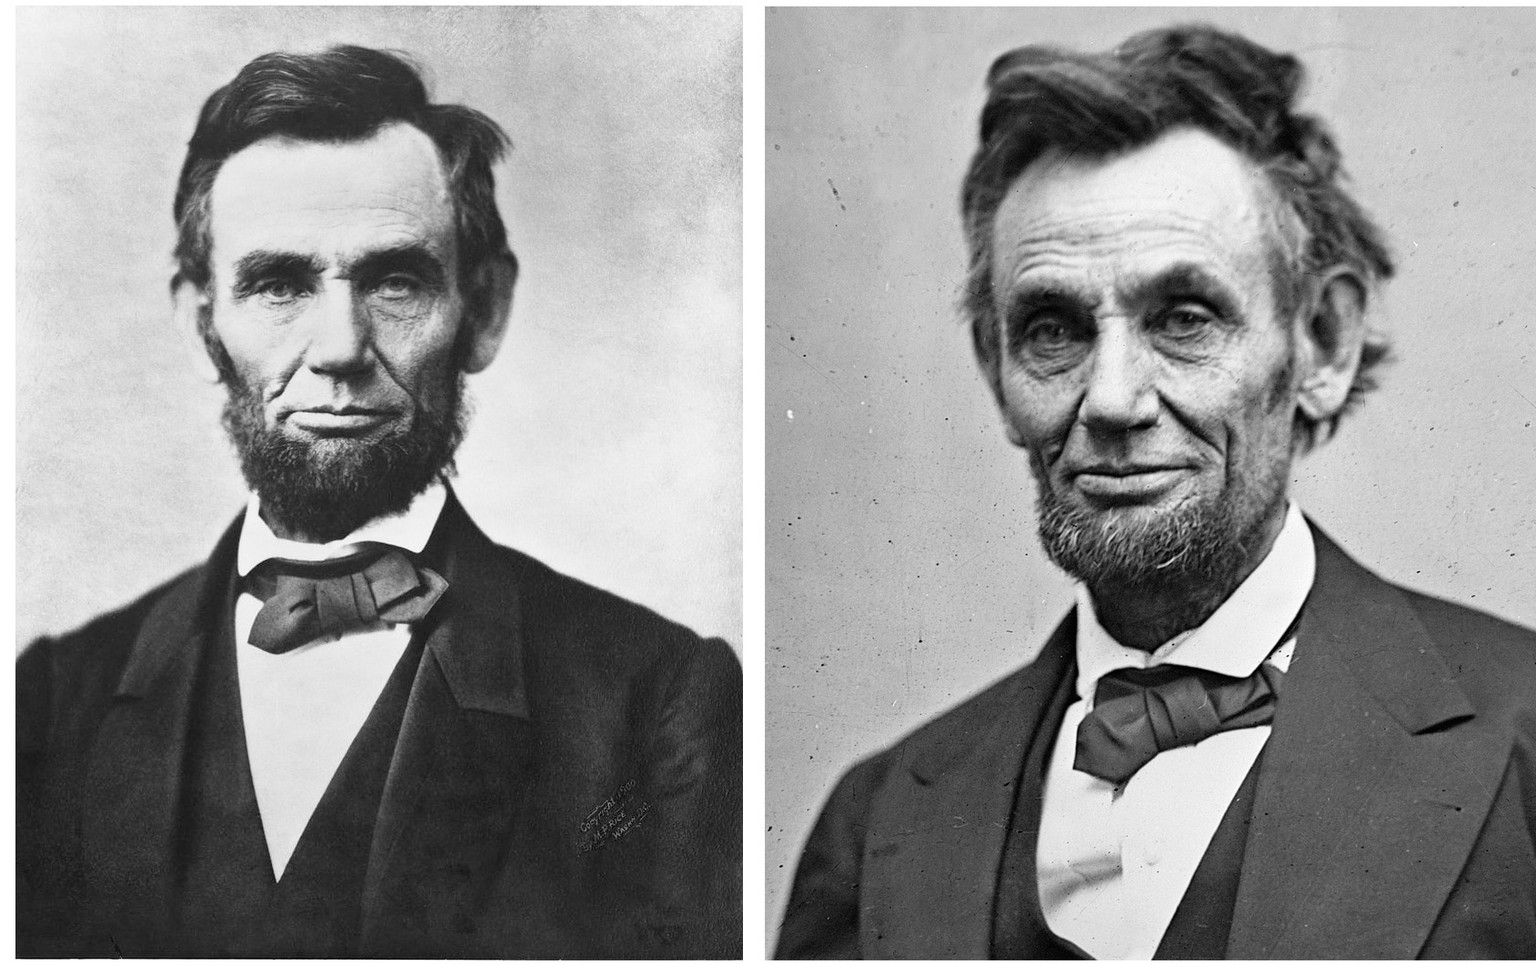 Der ernste US-Präsident im berühmten Gettysburger Porträt von 1863 vs. der weniger ernste, onkelhafte und private Abraham Lincoln.